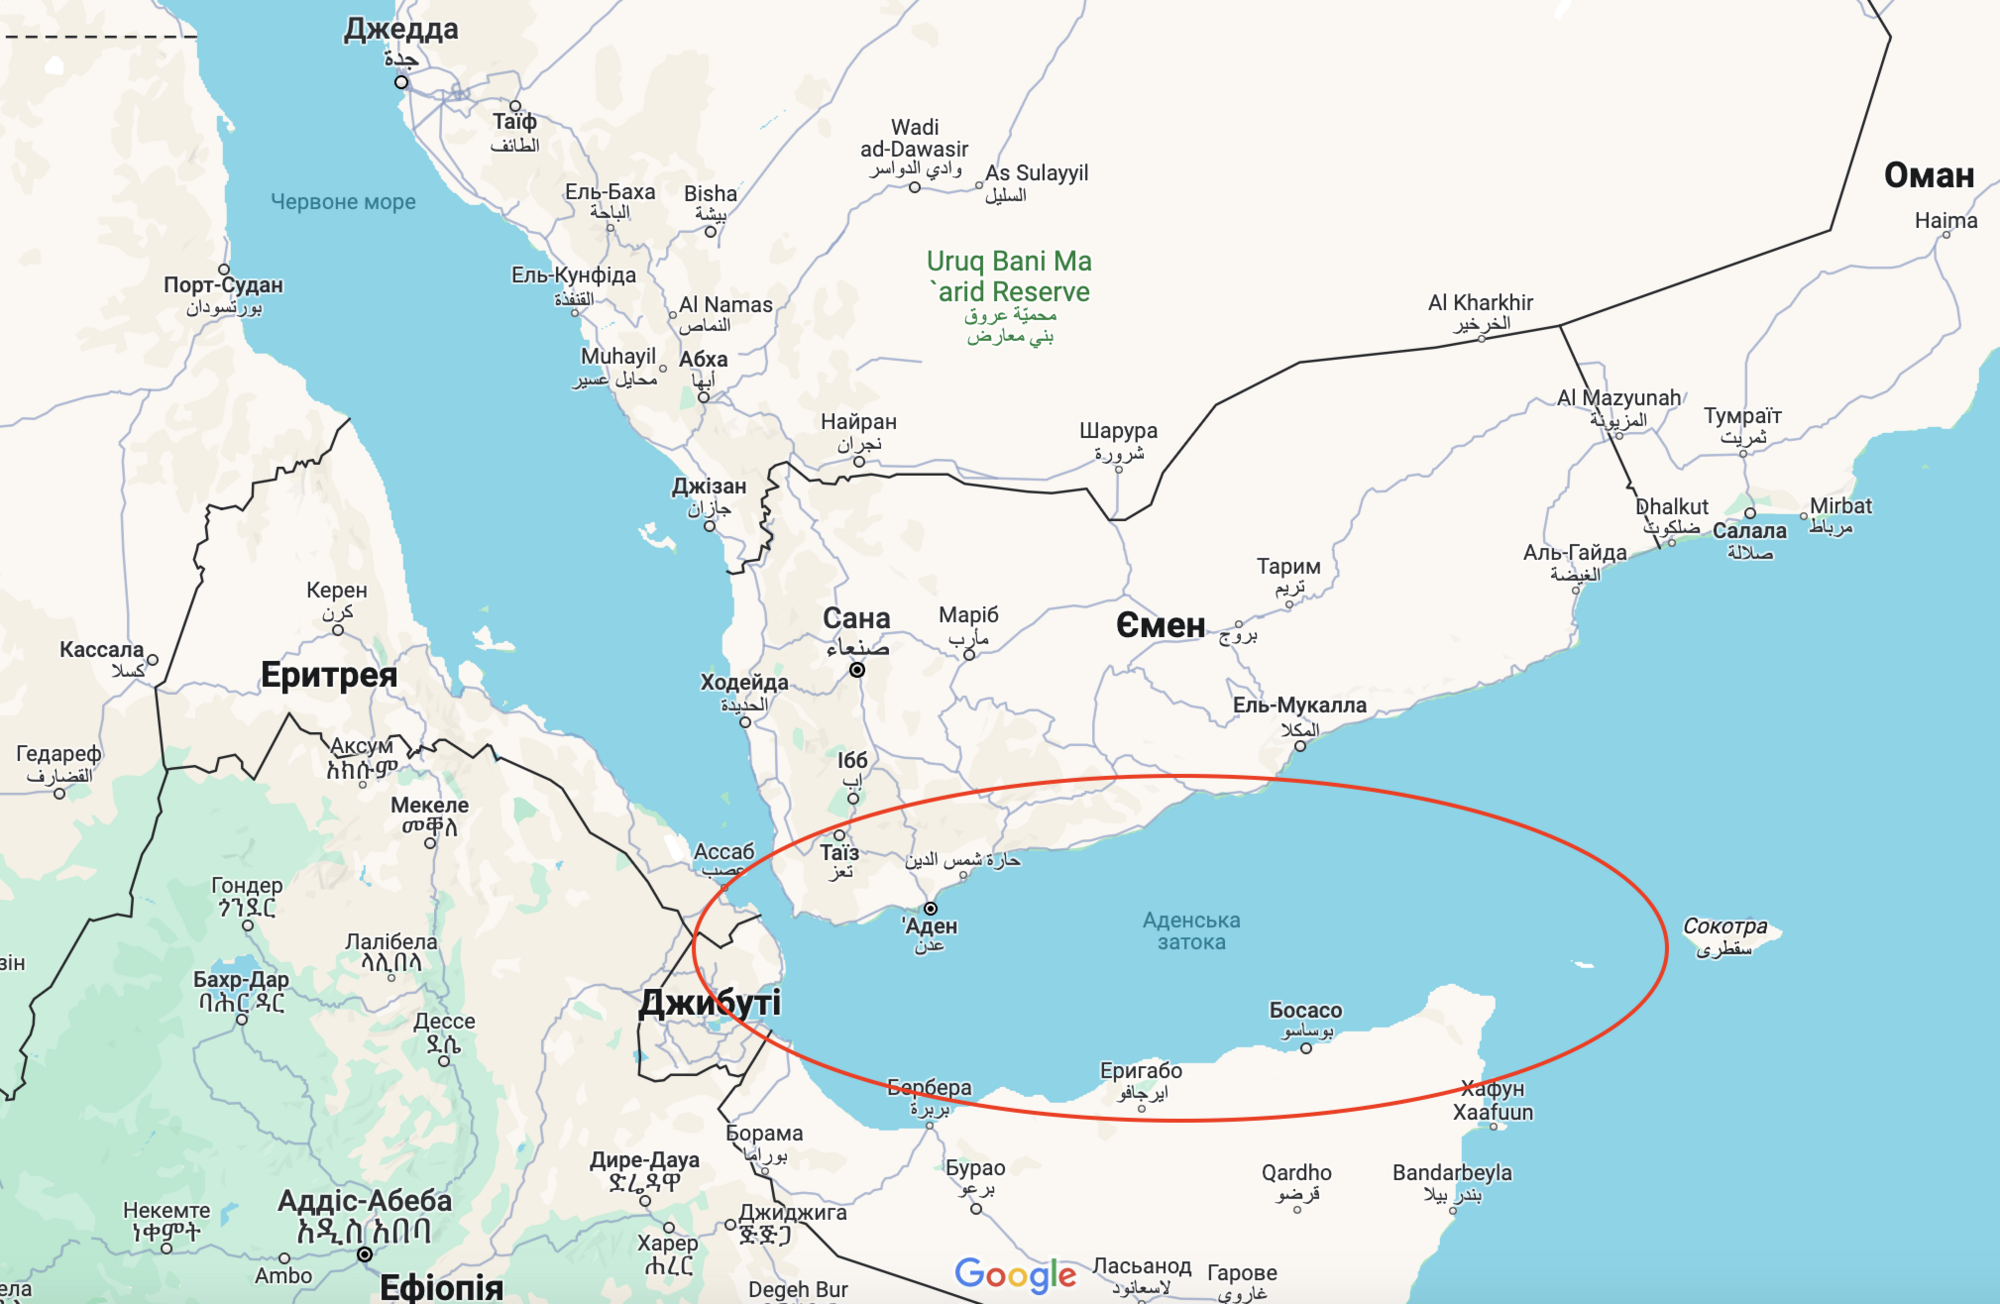 Єменські хусити атакували американське військове судно в Аденській затоці: що відбувається